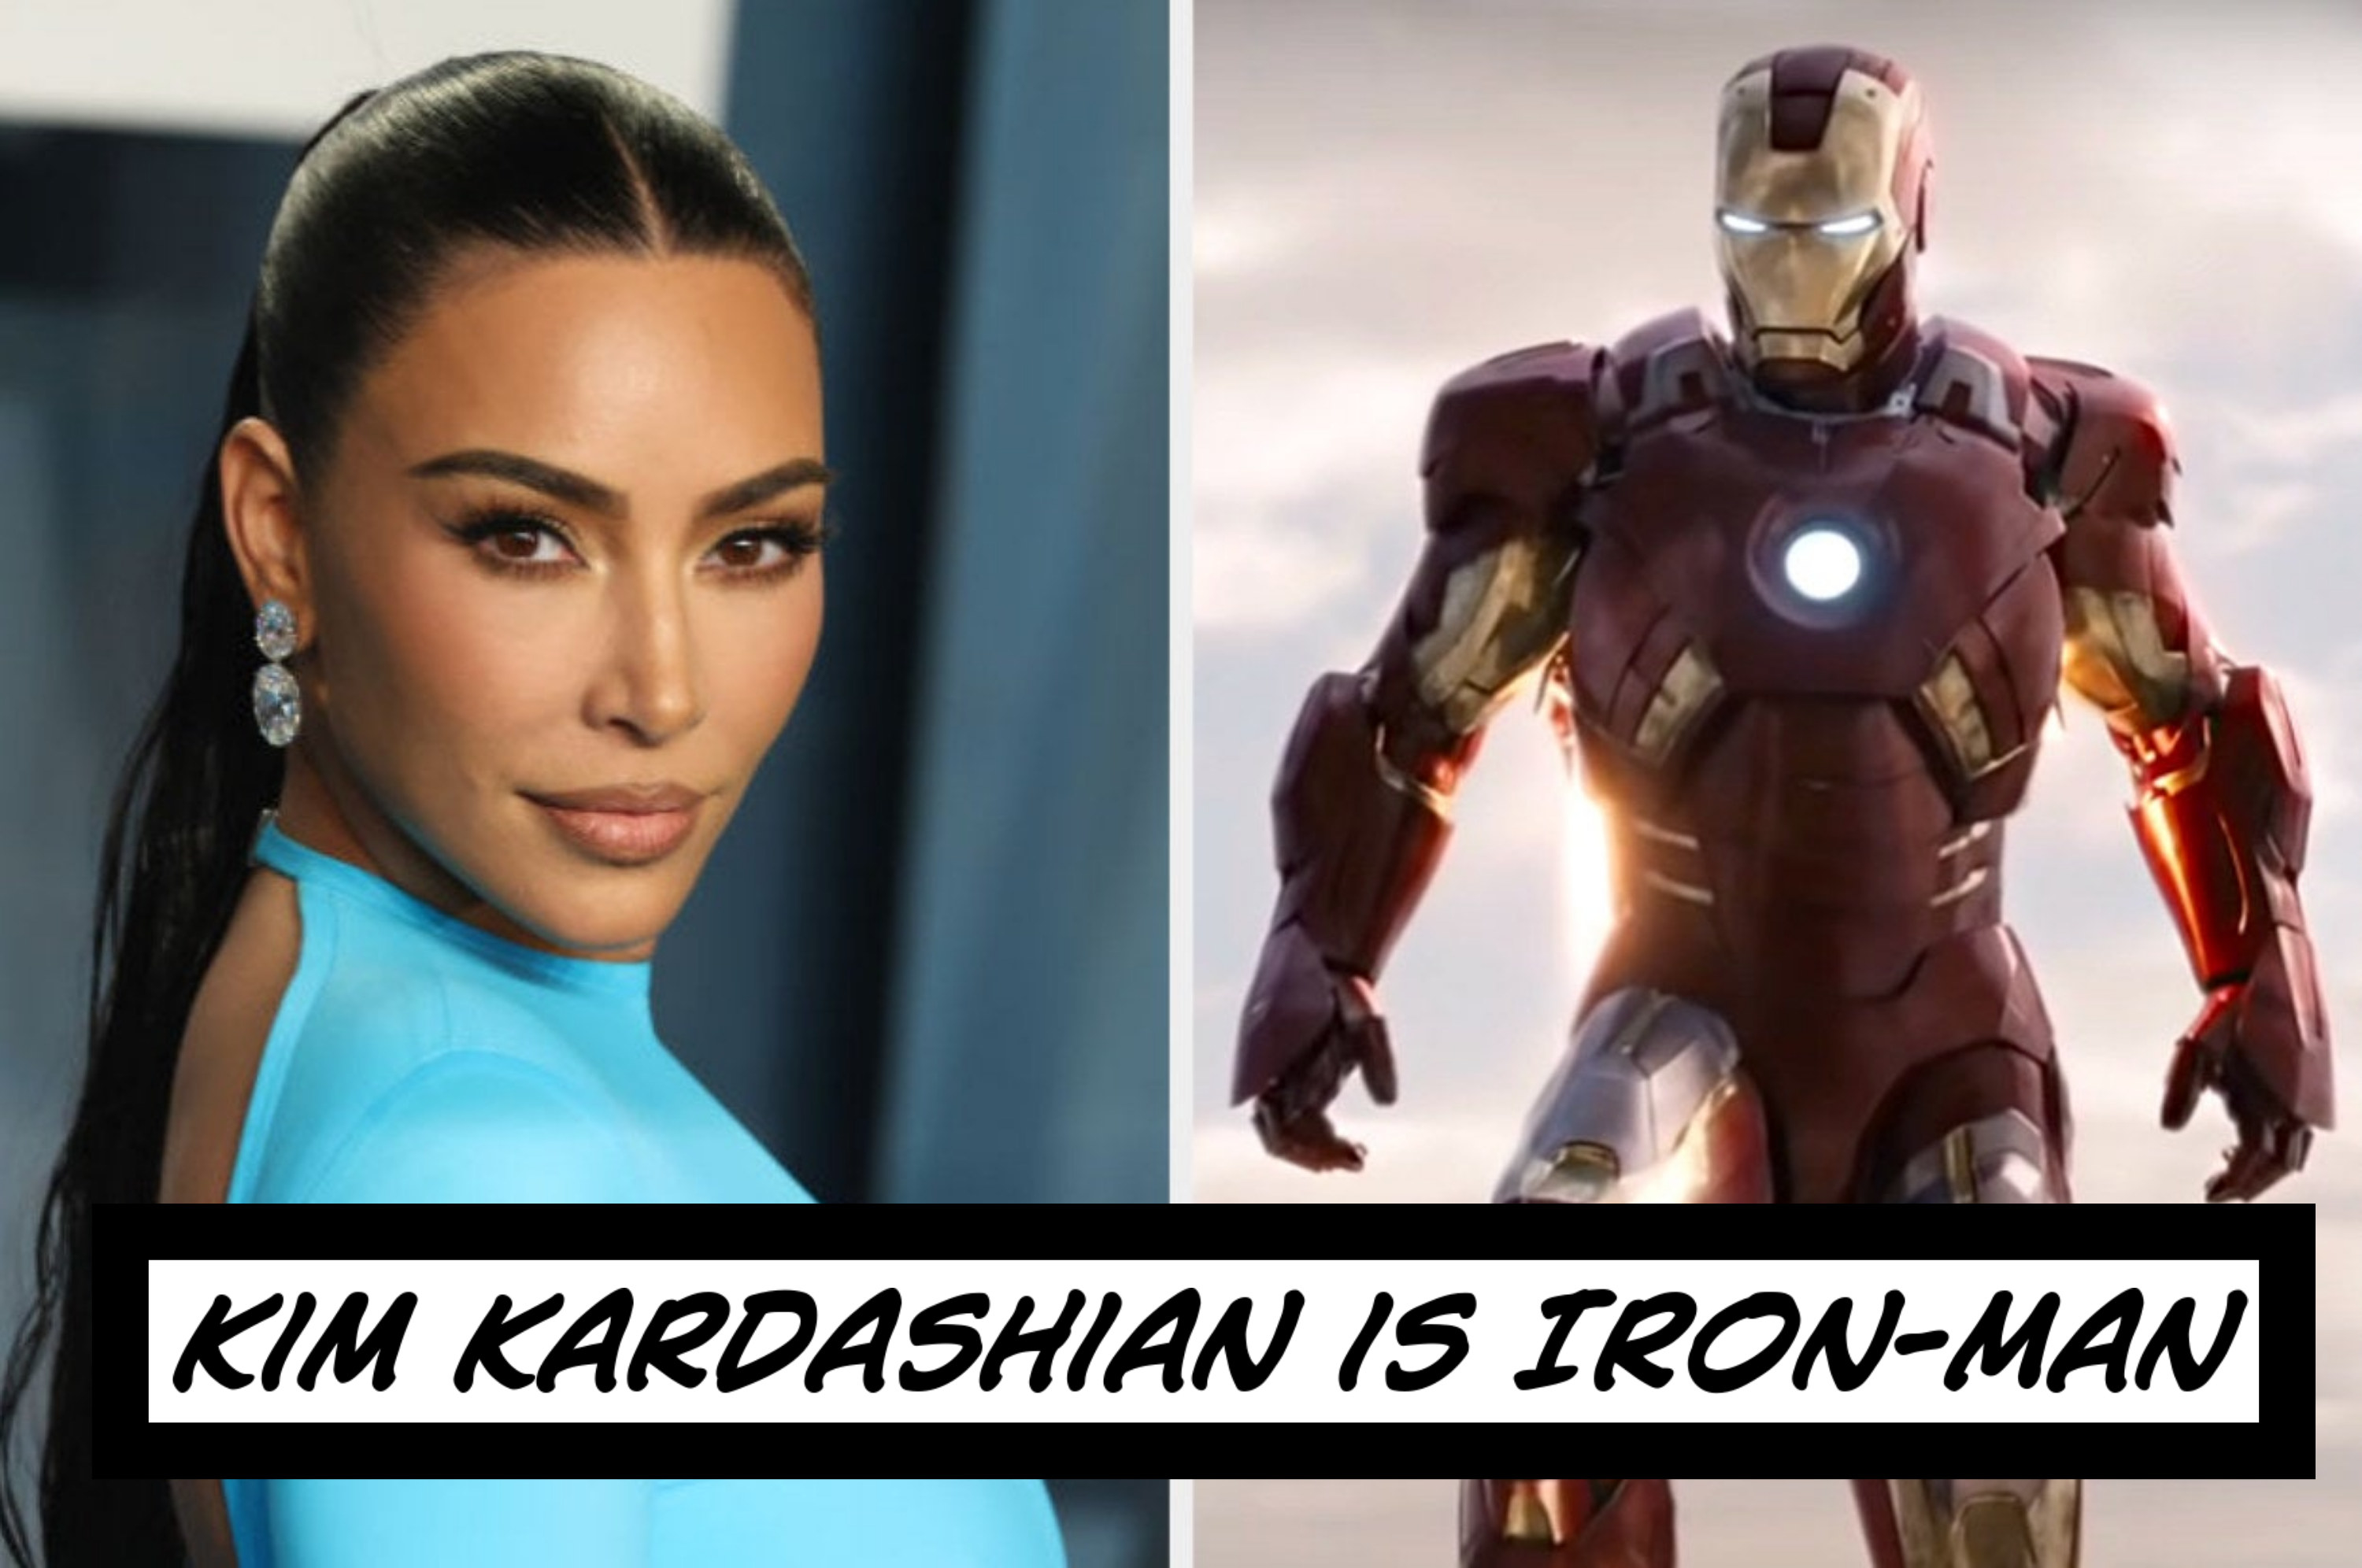 Kim Kardashian as Iron Man